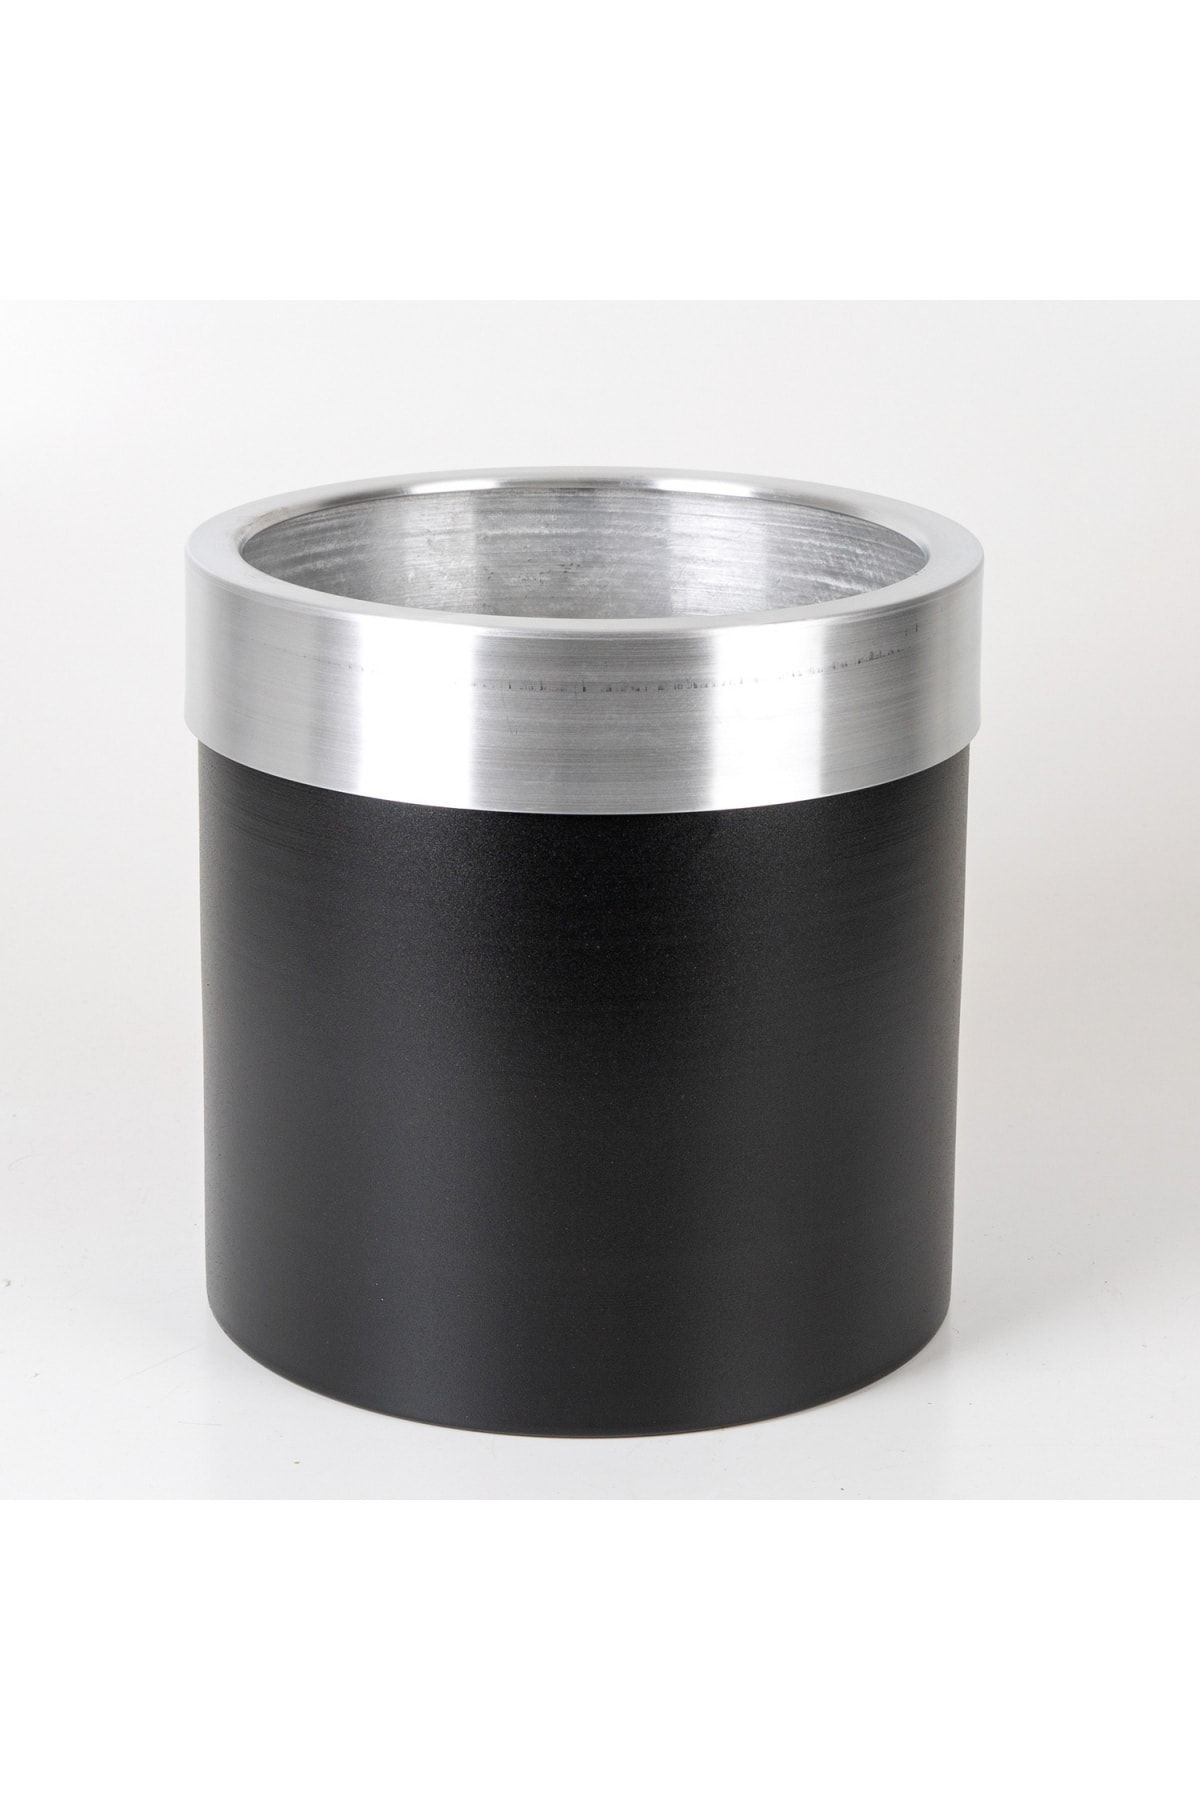 Herdekora Silindir Alüminyum Saksı Çemberli Siyah-gümüş ( Ebat 30x30 Cm.)